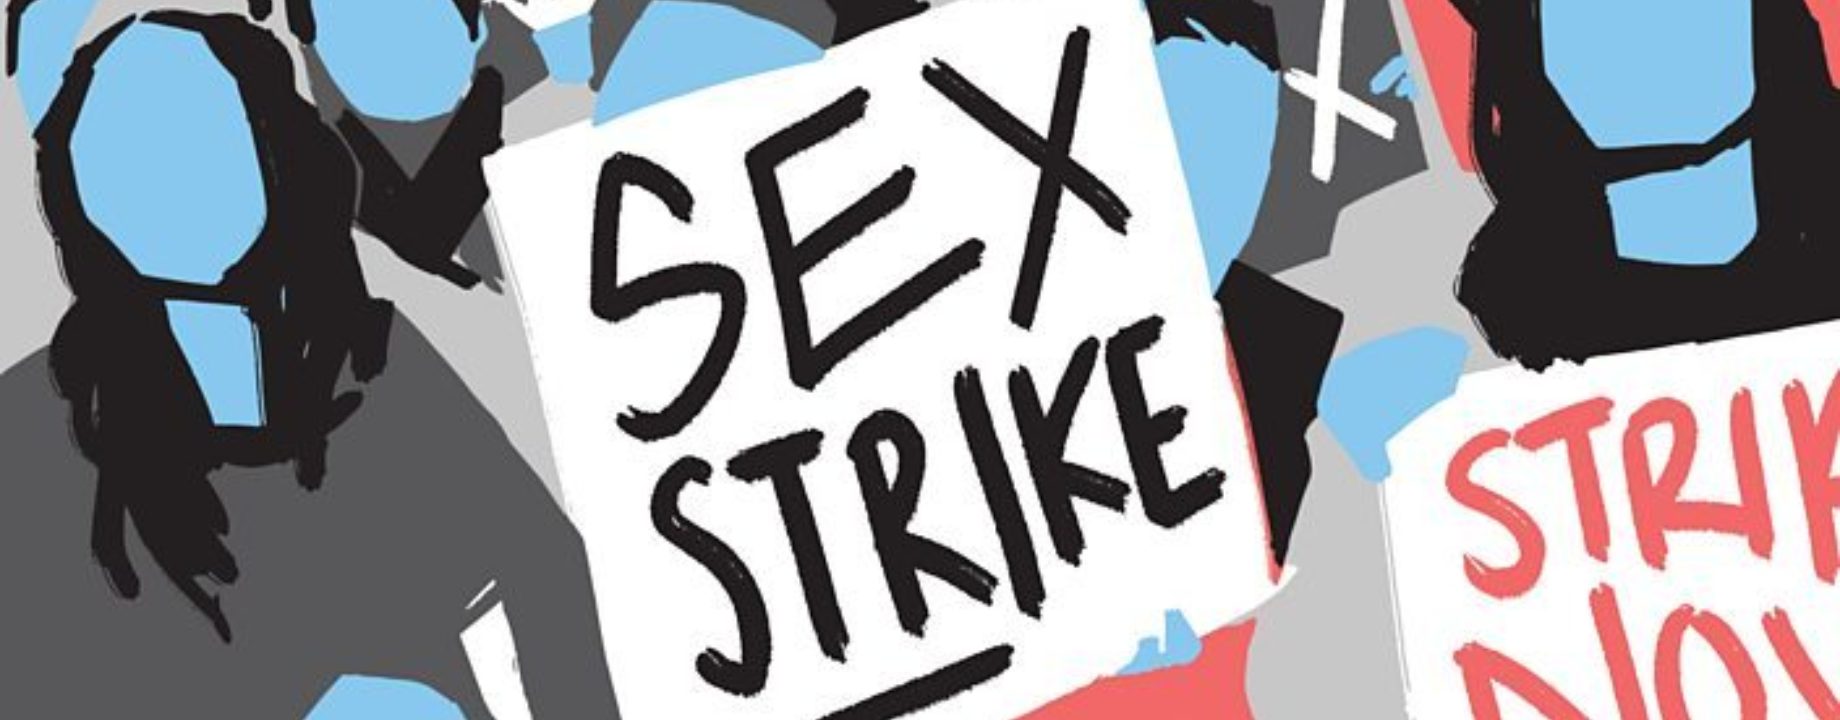 Szex sztrájk